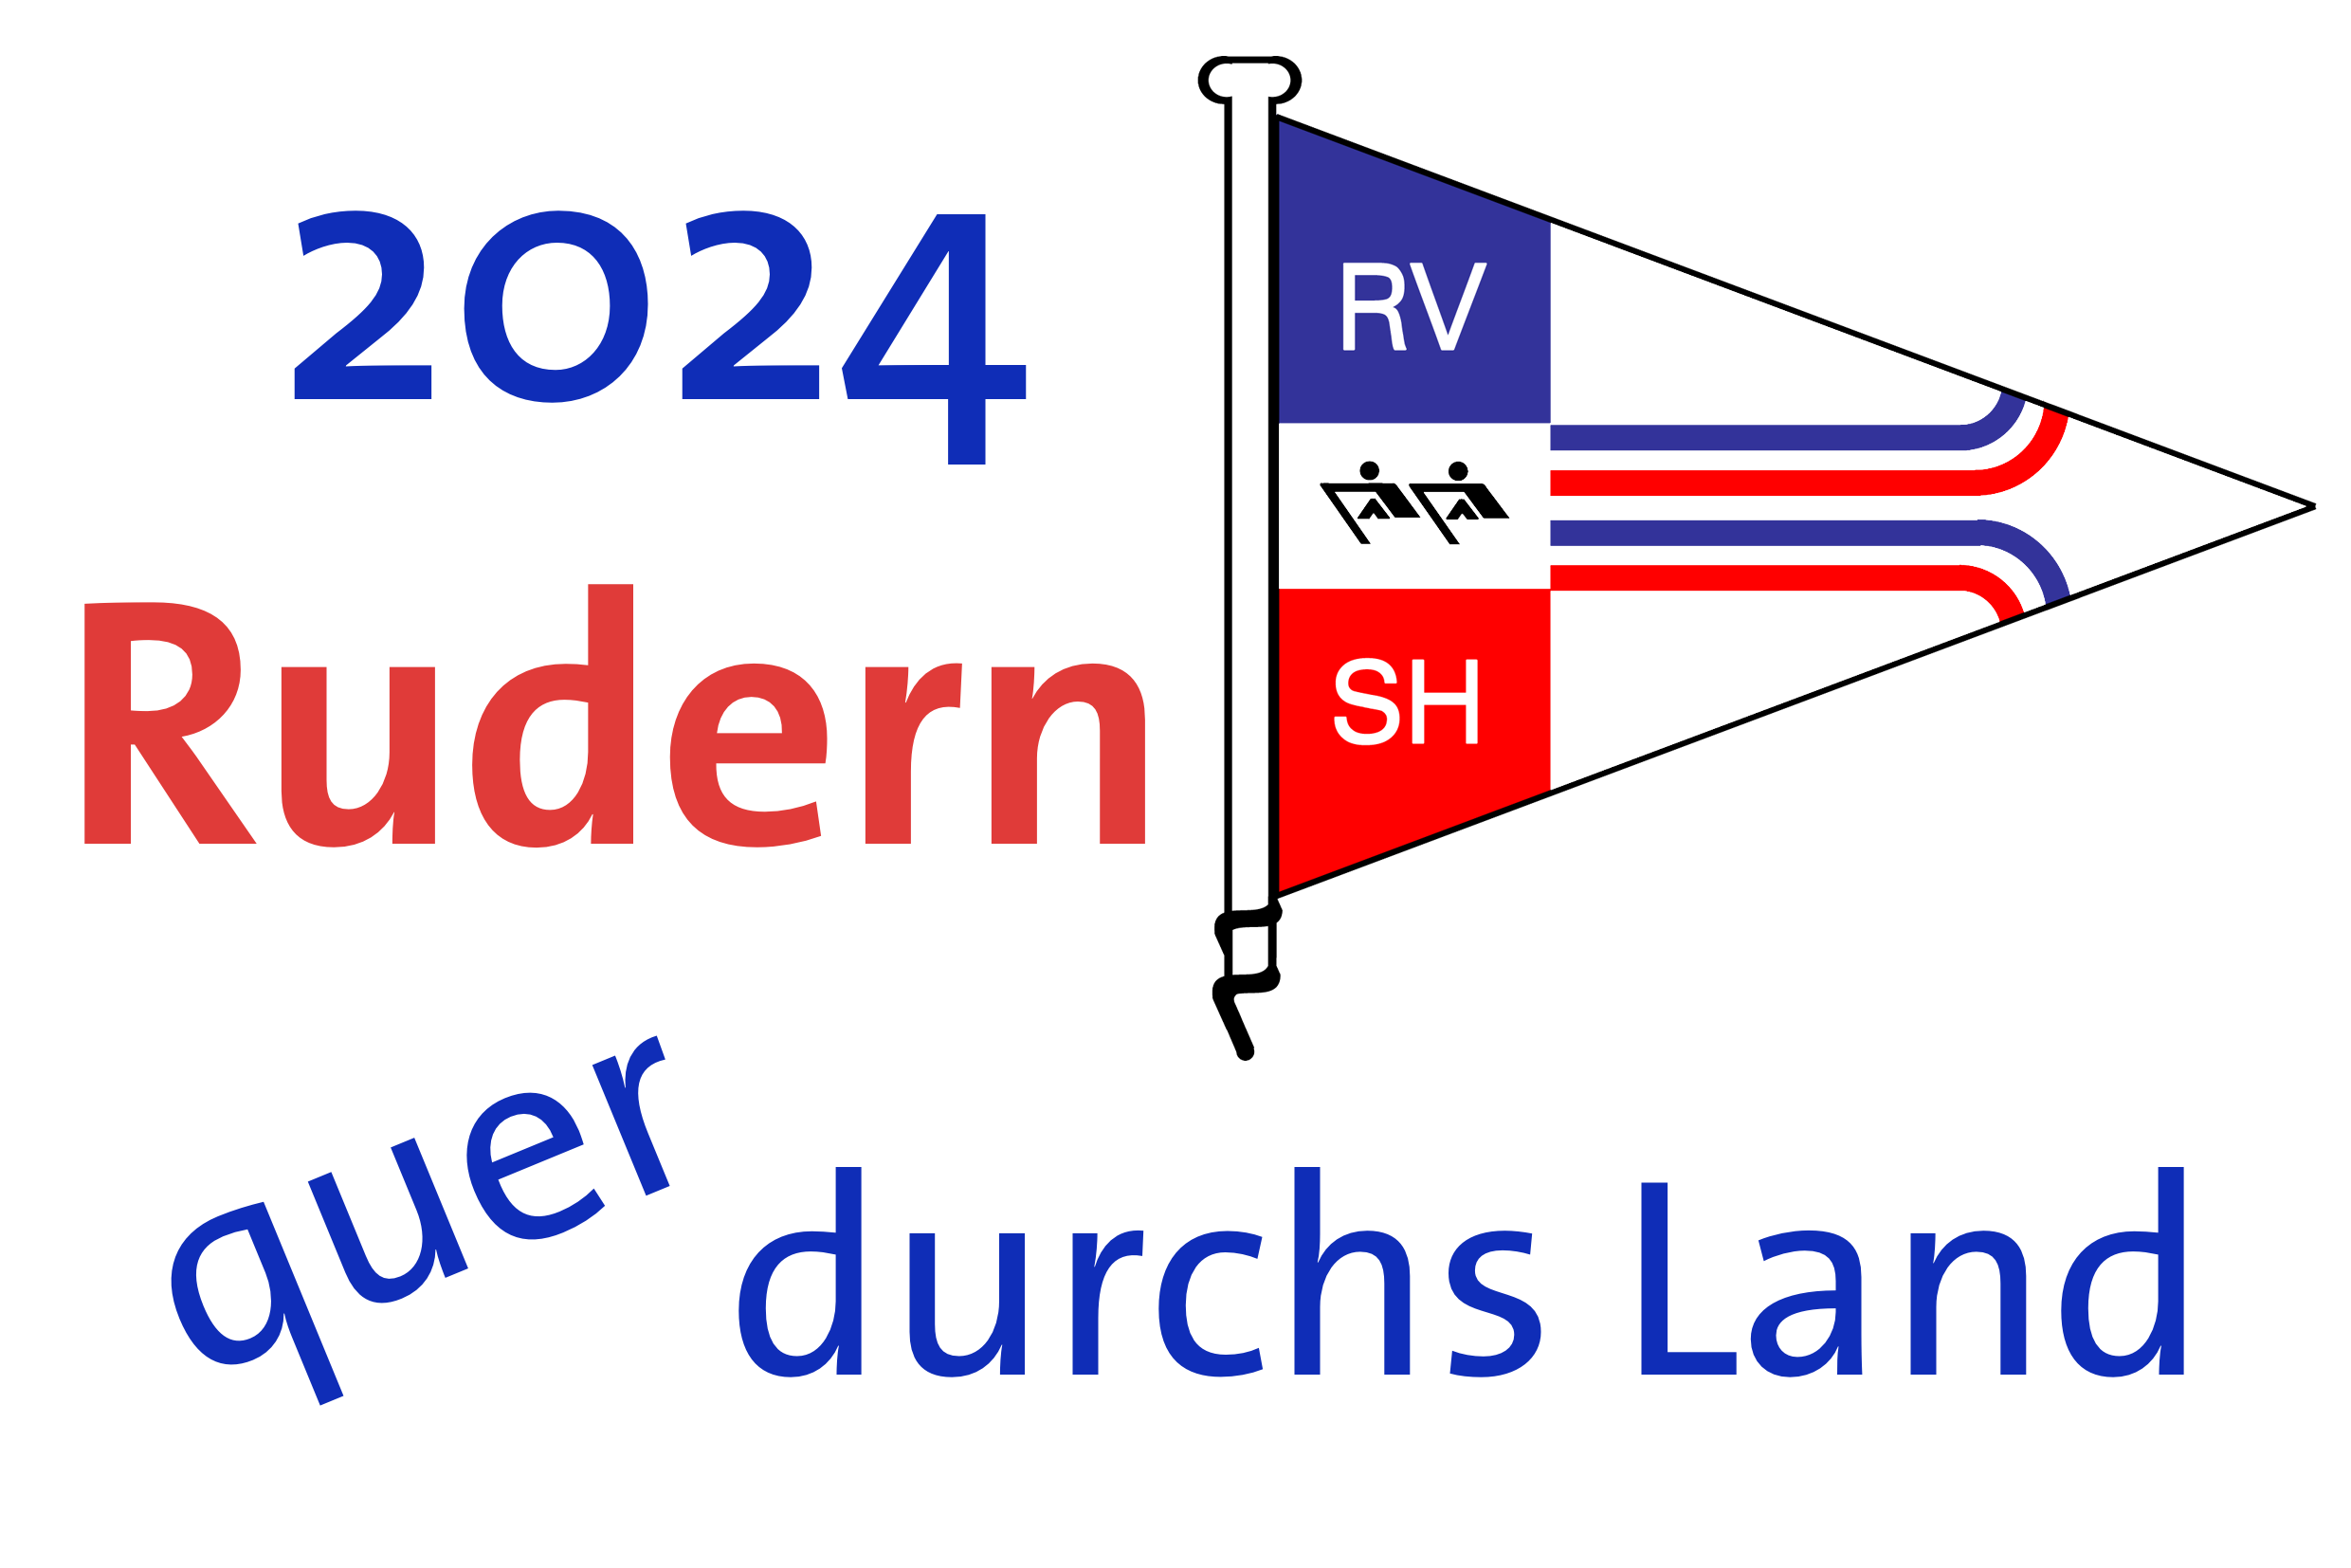 stilisierte Flagge des Ruderverband Schleswig-Holstein umgeben vom Schriftzug 2024 Rudern quer durchs Land